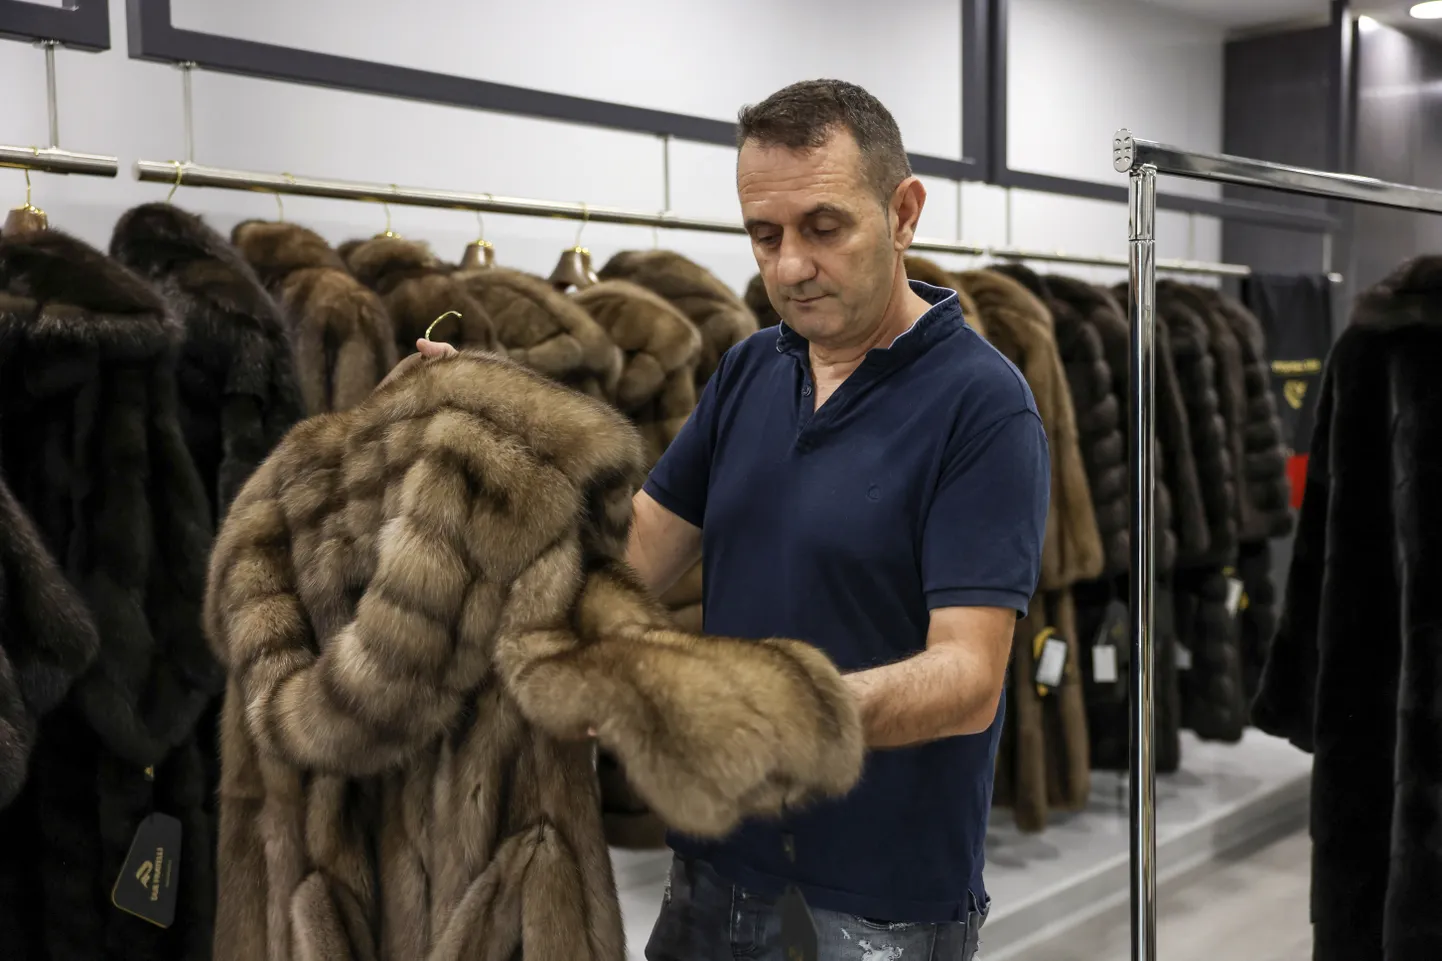 Kreeka köösner Antonis Disios vaatab kasukat oma töökojas Kastorias.